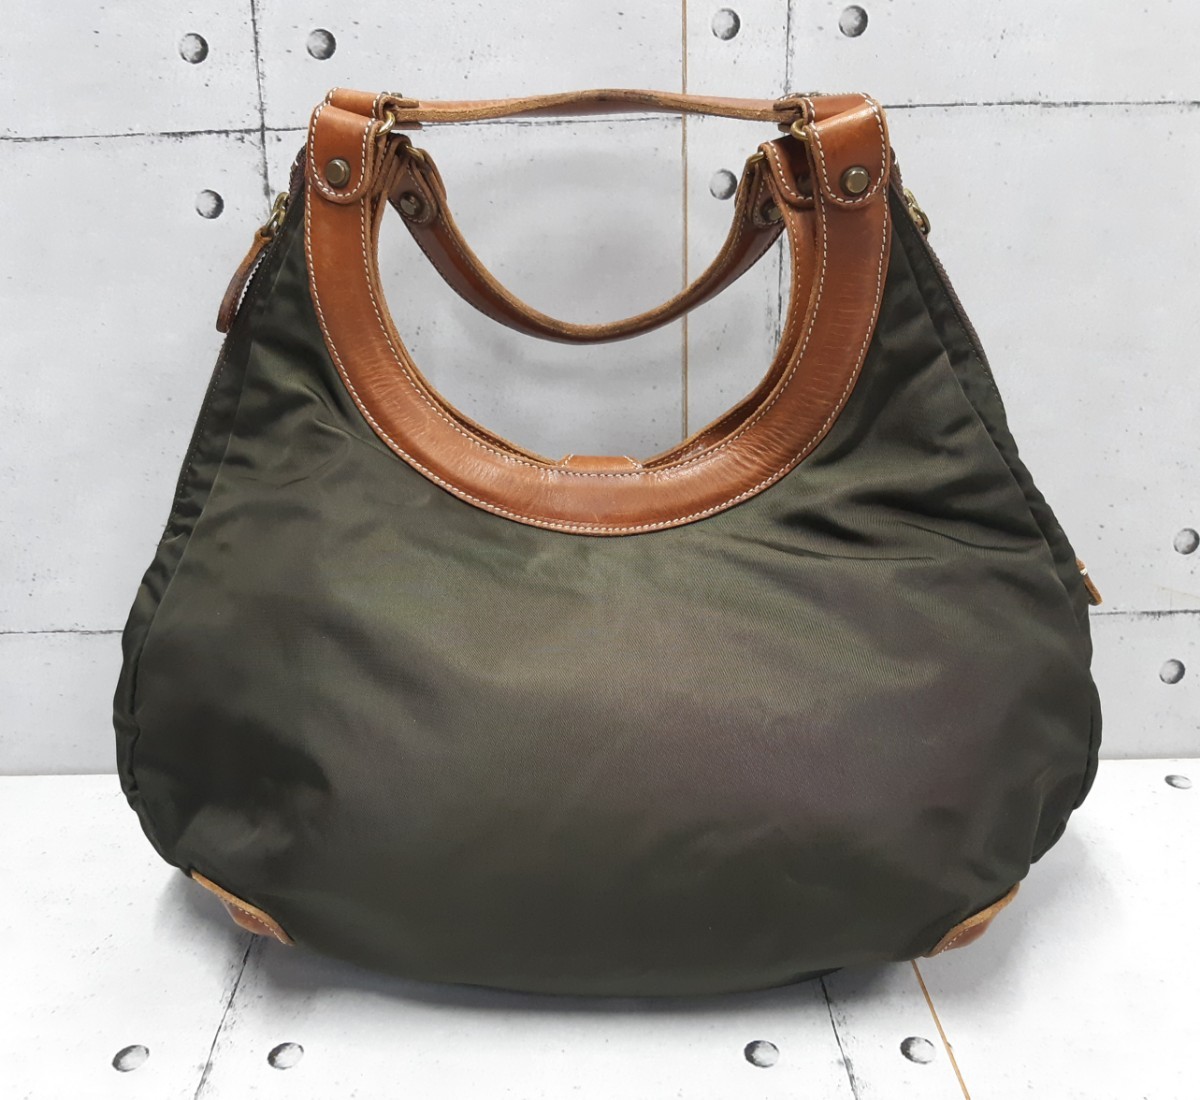 SALE! распродажа!Felisi 9333 Circle сумка ручная сумочка сумка на плечо Felisi кожа комбинированный 